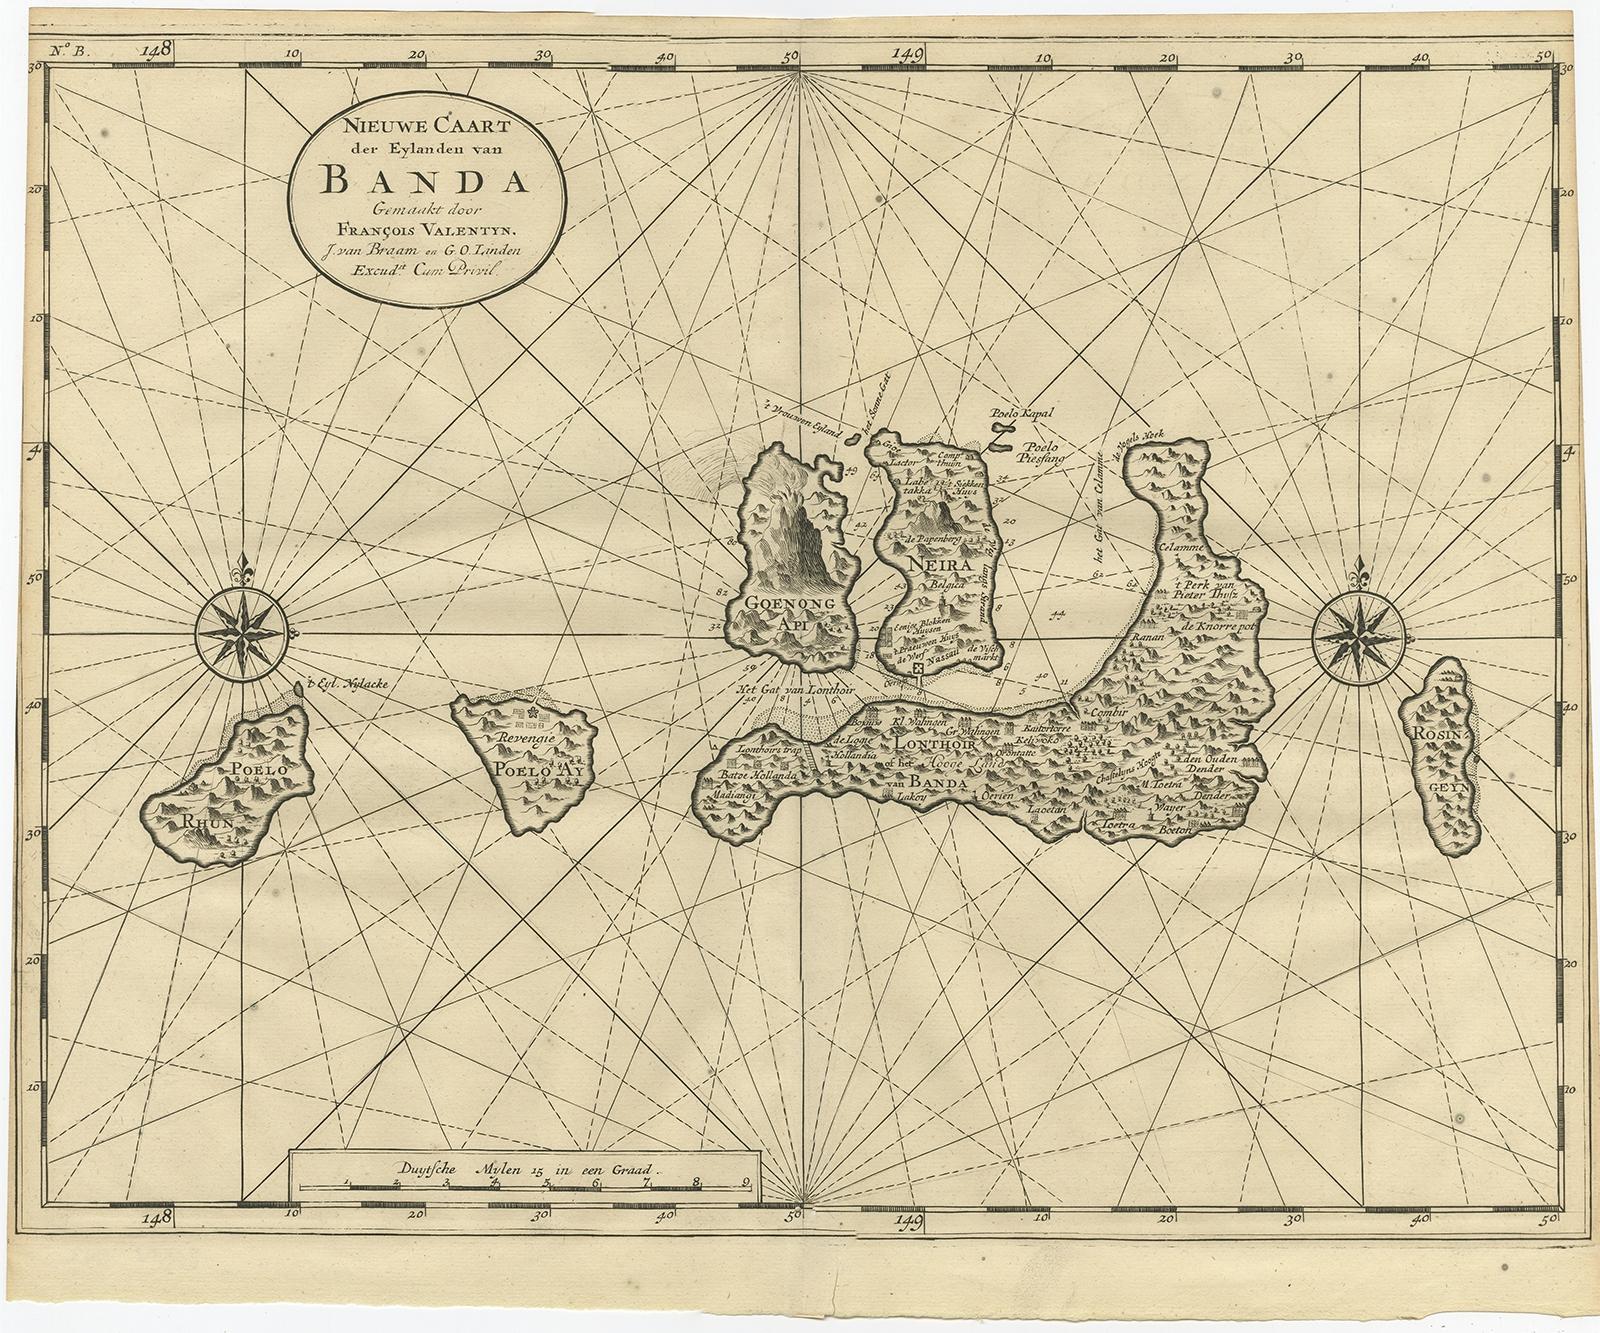 Antike Karte mit dem Titel 'Nieuwe Caart der Eylanden van Banda'. 

Schöne Karte der Banda-Inseln einschließlich Banda Api, Banda Neira, Banda Besar, Pulau Hatta (Rosengain), Pulau Ai und Pulau Run. Dieser Druck stammt aus 